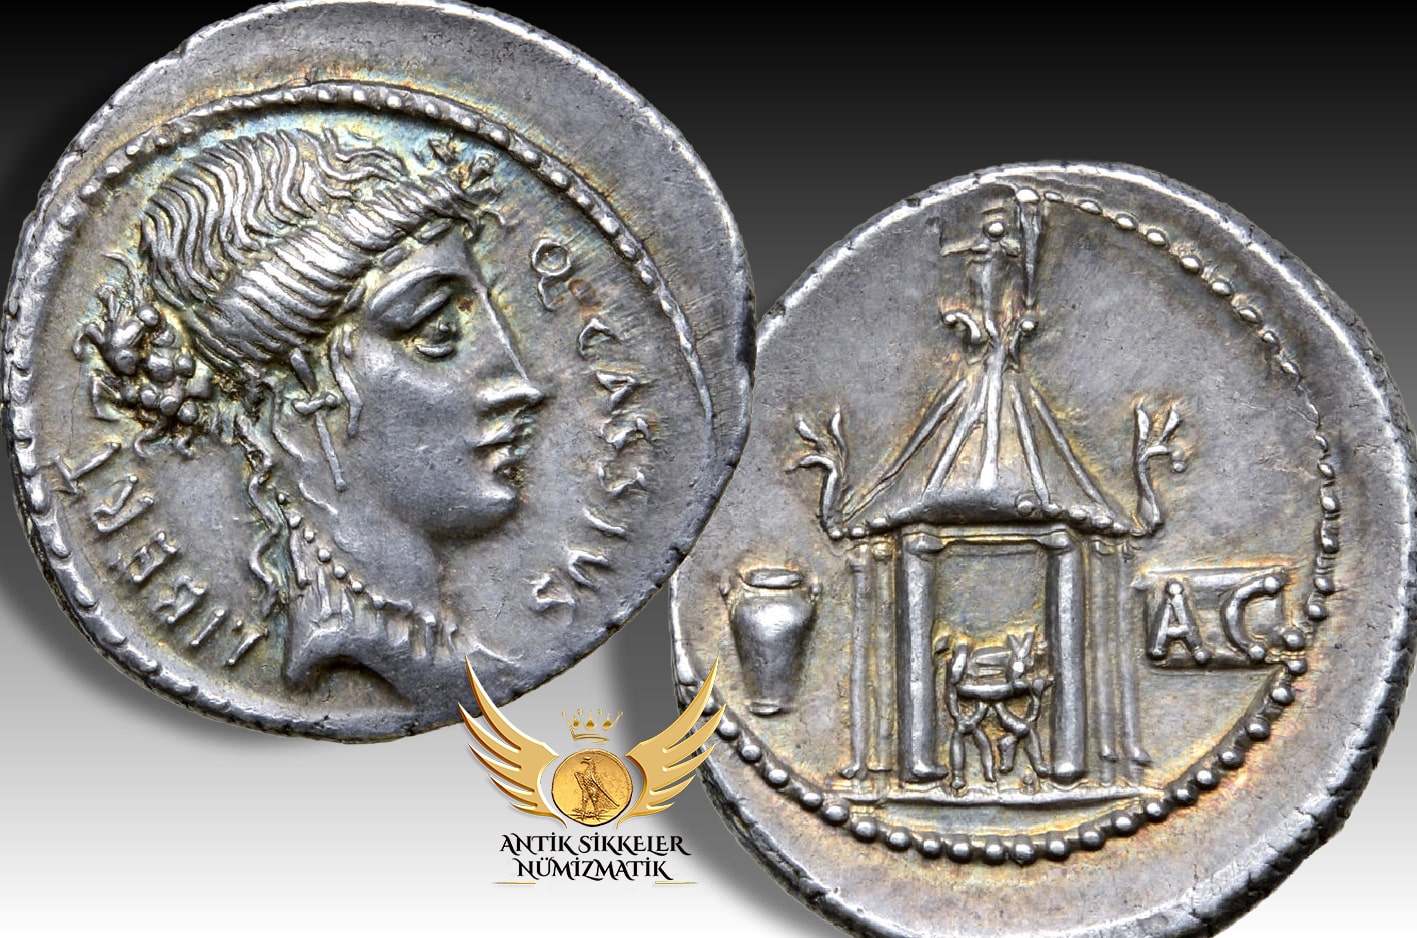 ANTİK SİKKELER NÜMİZMATİK_Quintus Cassius Longinus .jpg